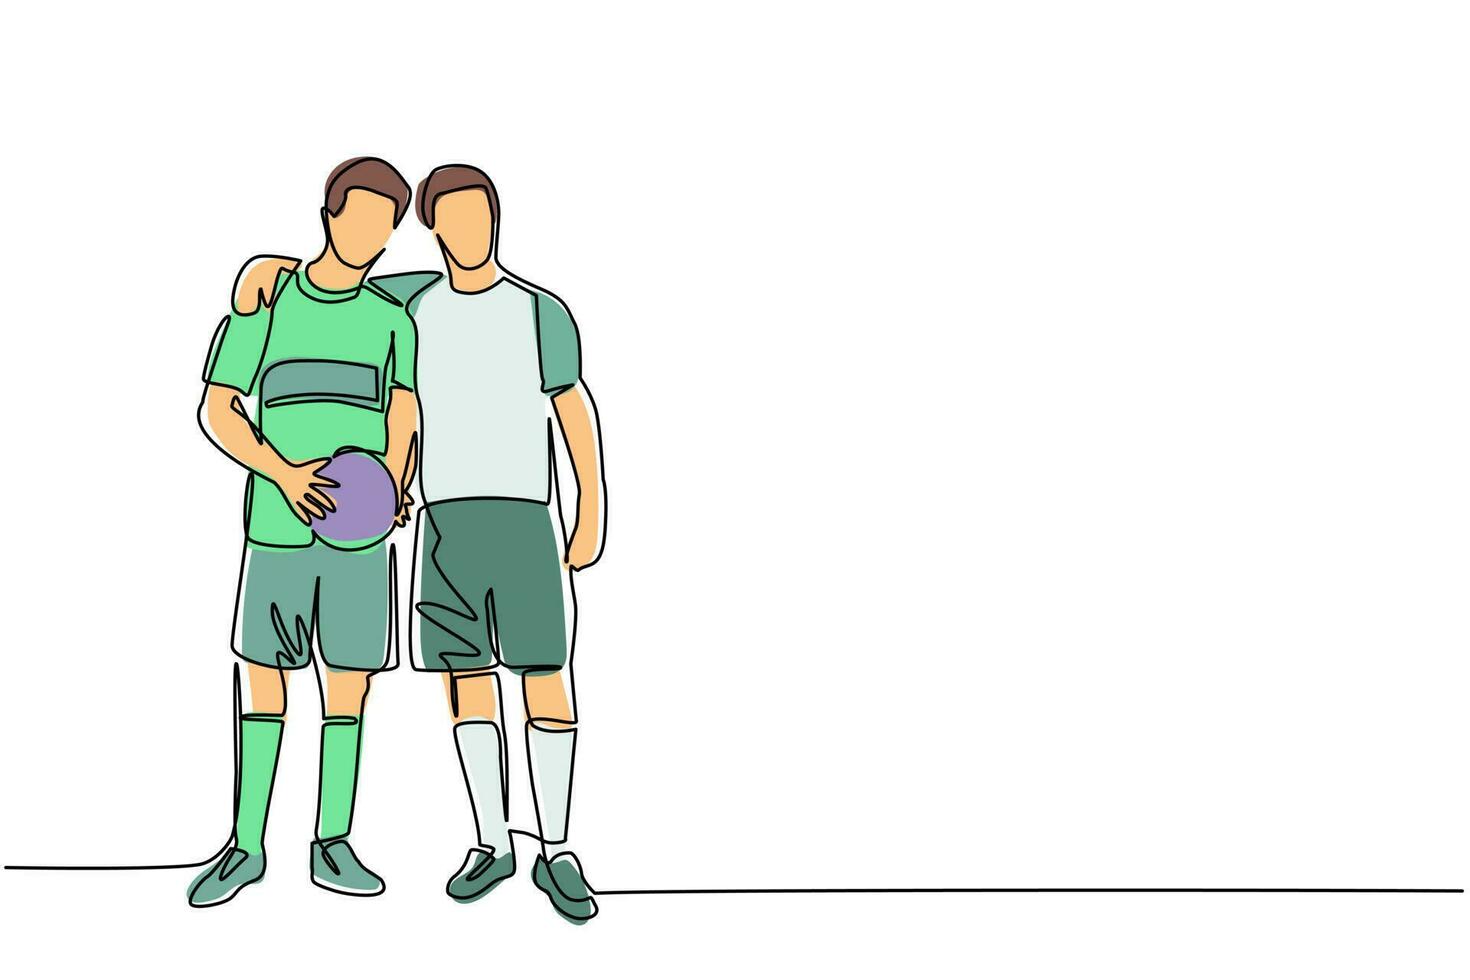 dibujo continuo de una línea dos jugadores de fútbol se abrazan. dos amistosos caminando juntos después de que terminó el partido. futbolistas masculinos celebrando gol con abrazo. vector de diseño de dibujo de una sola línea